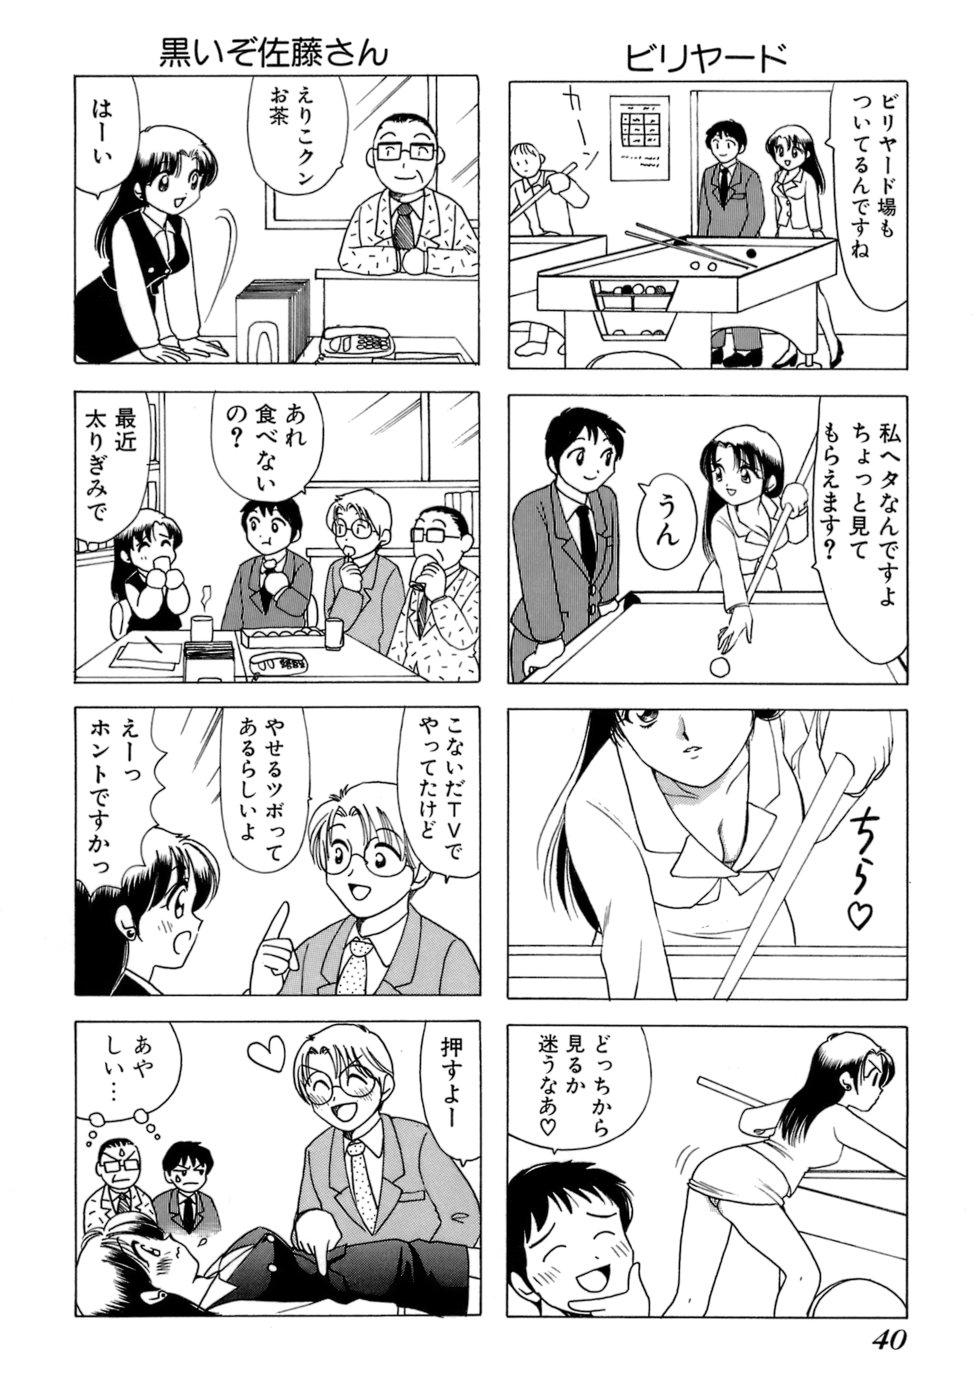 Eriko-kun, Ocha!! Vol.01 42